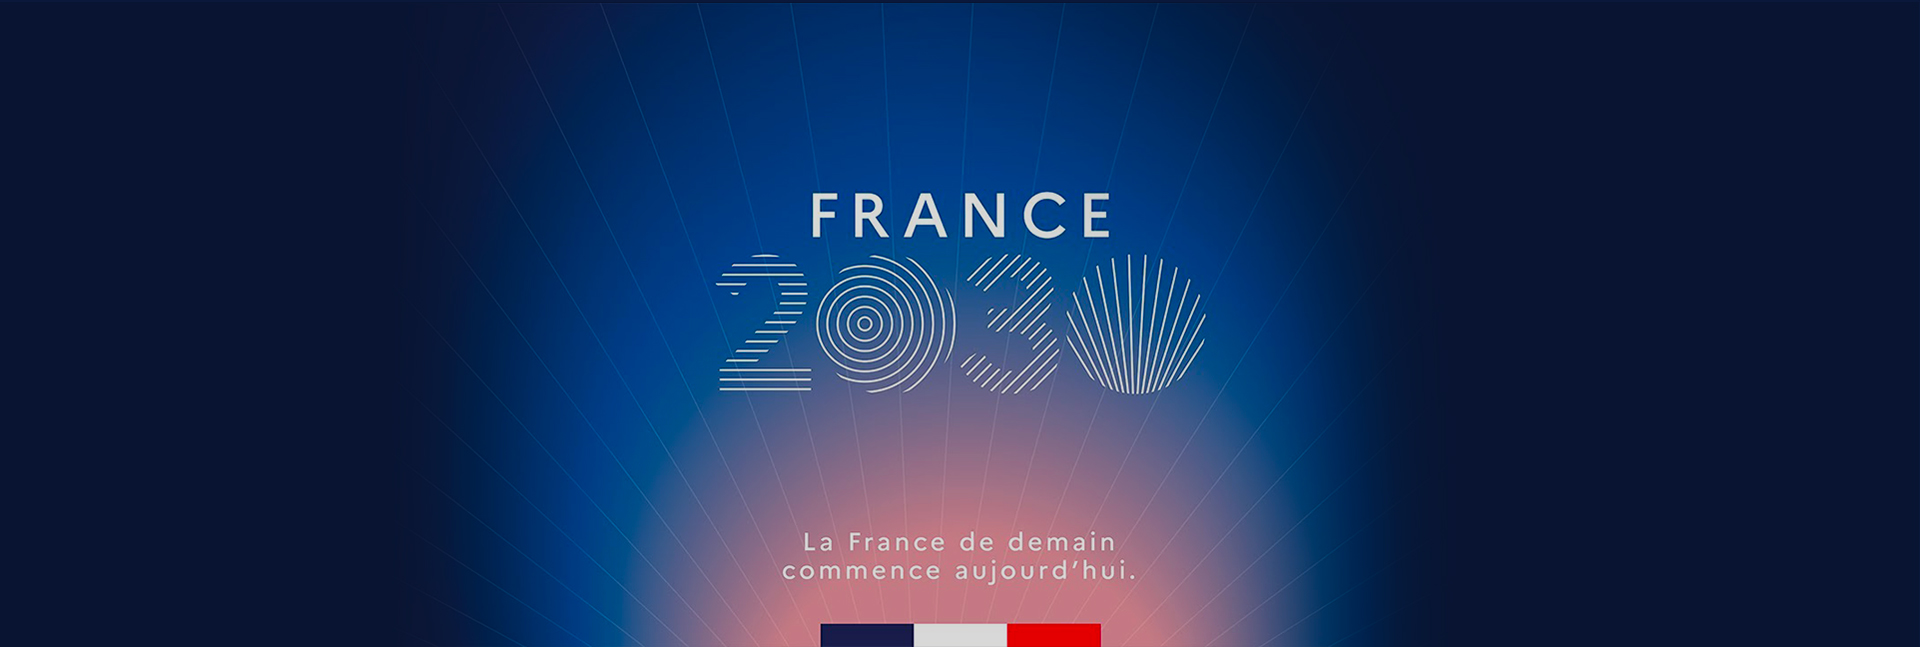 France 2030 : programme de relance